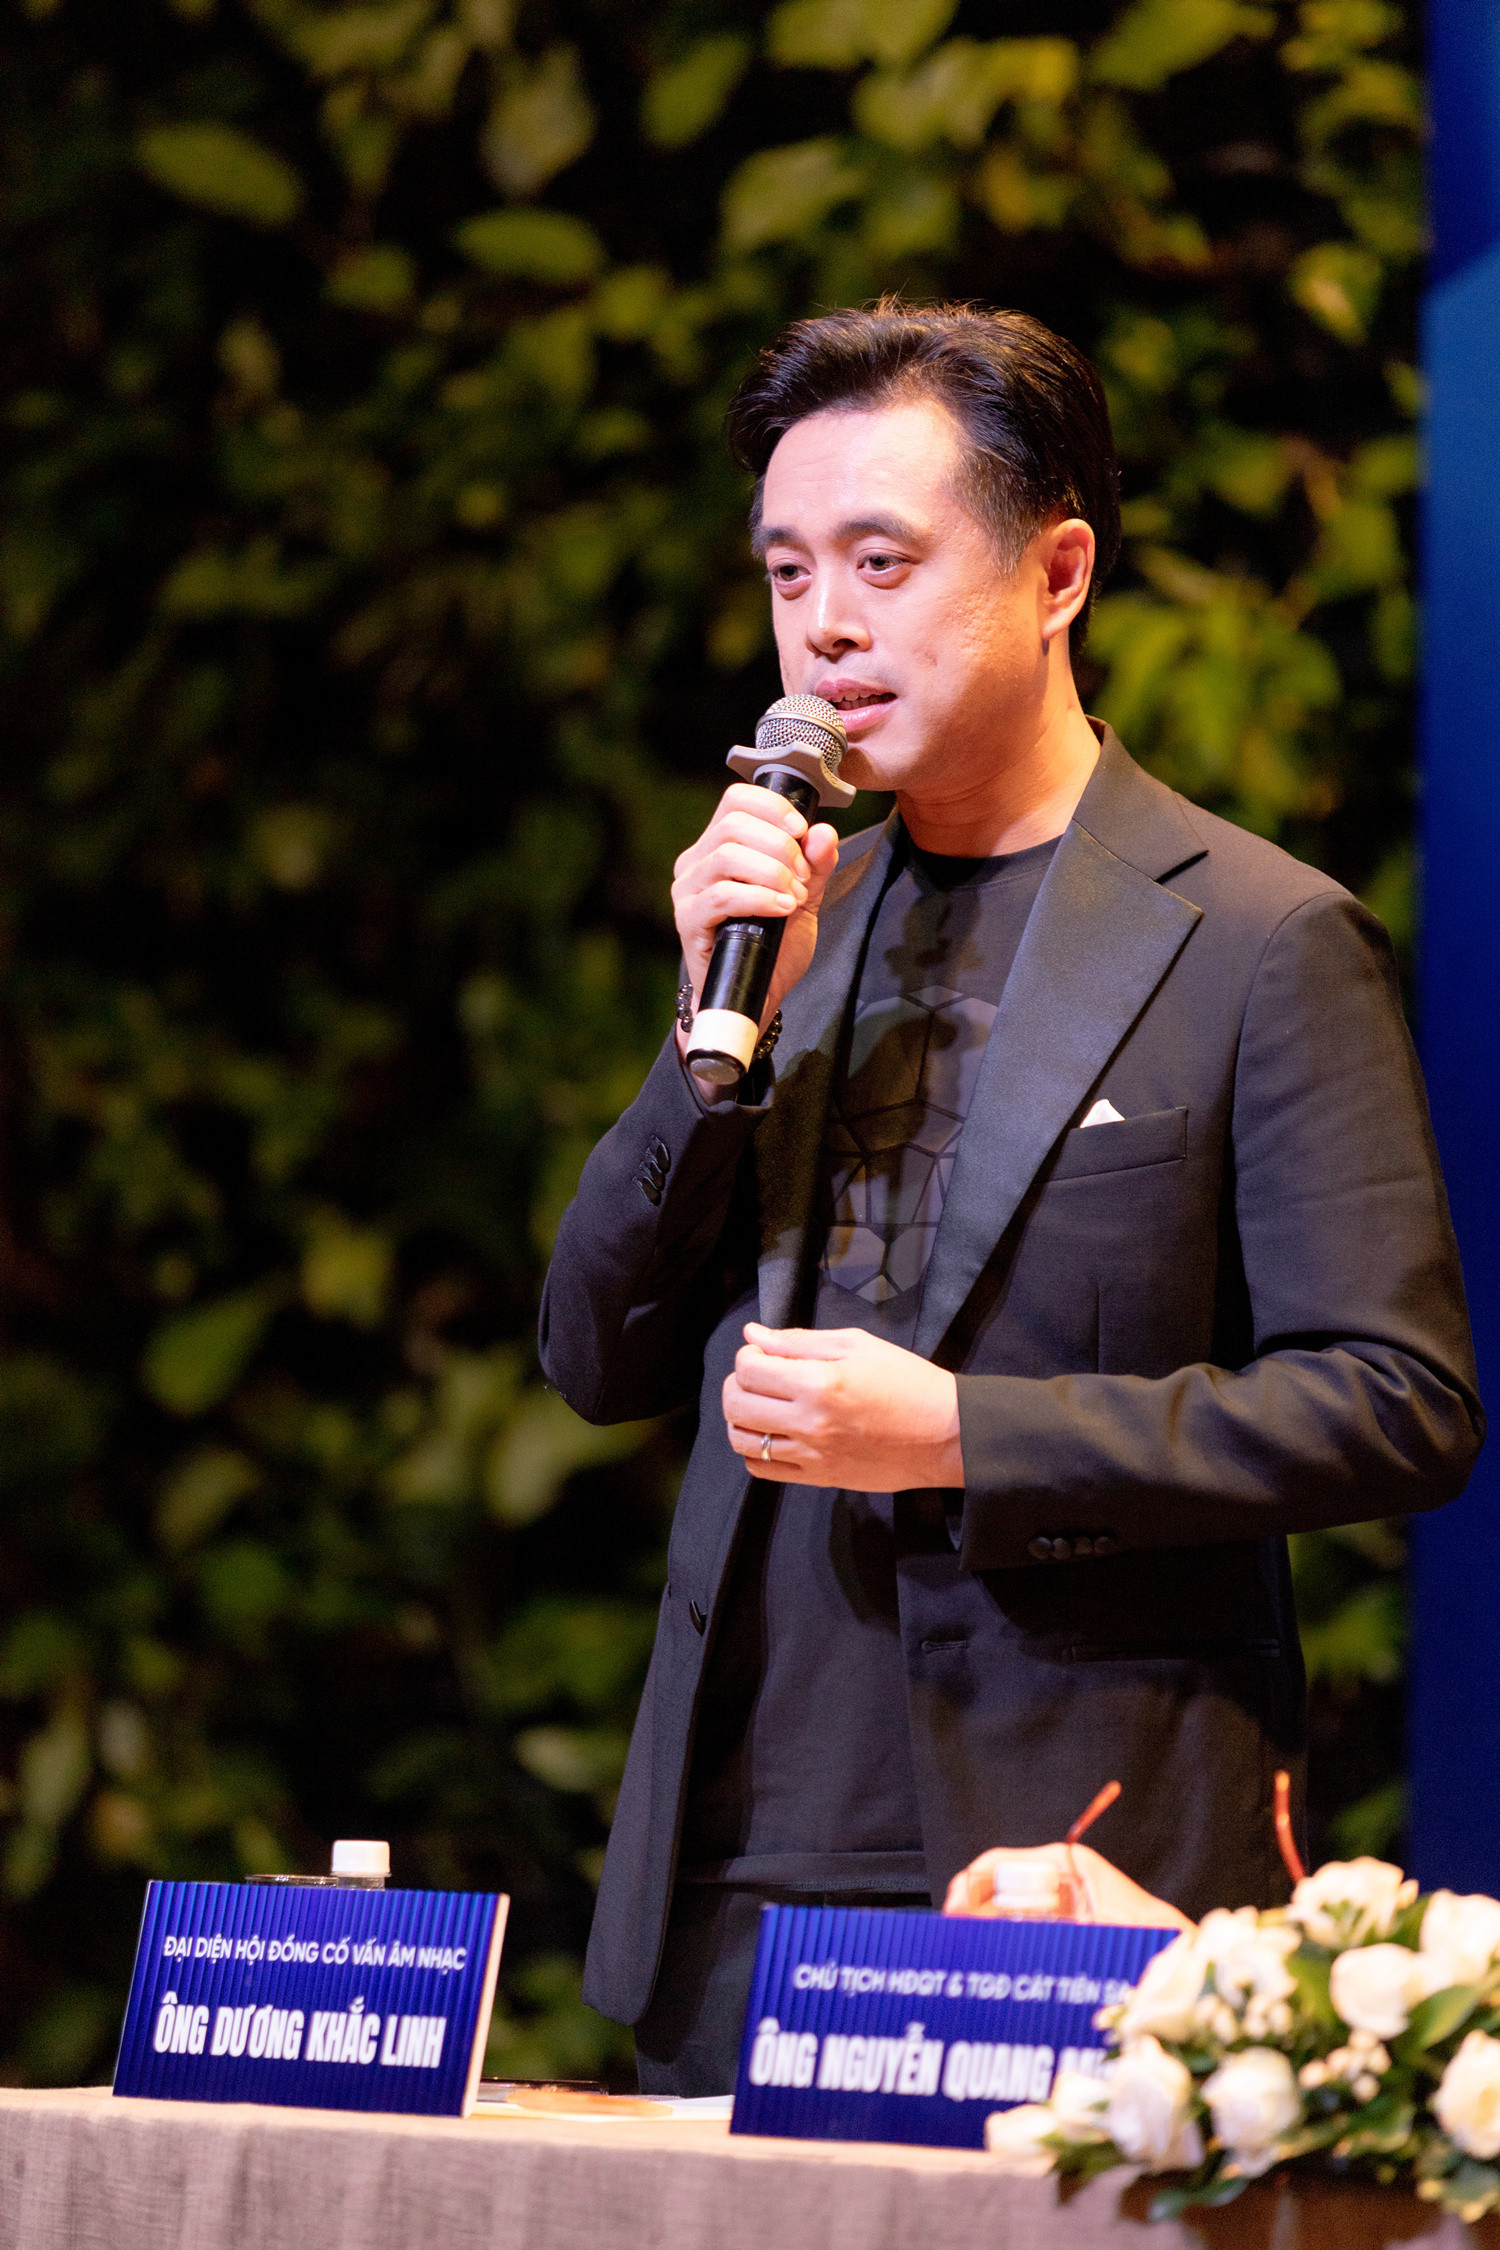 Quang Lê, Đông Nhi 'vung' trăm triệu mua bài hát trên sân khấu